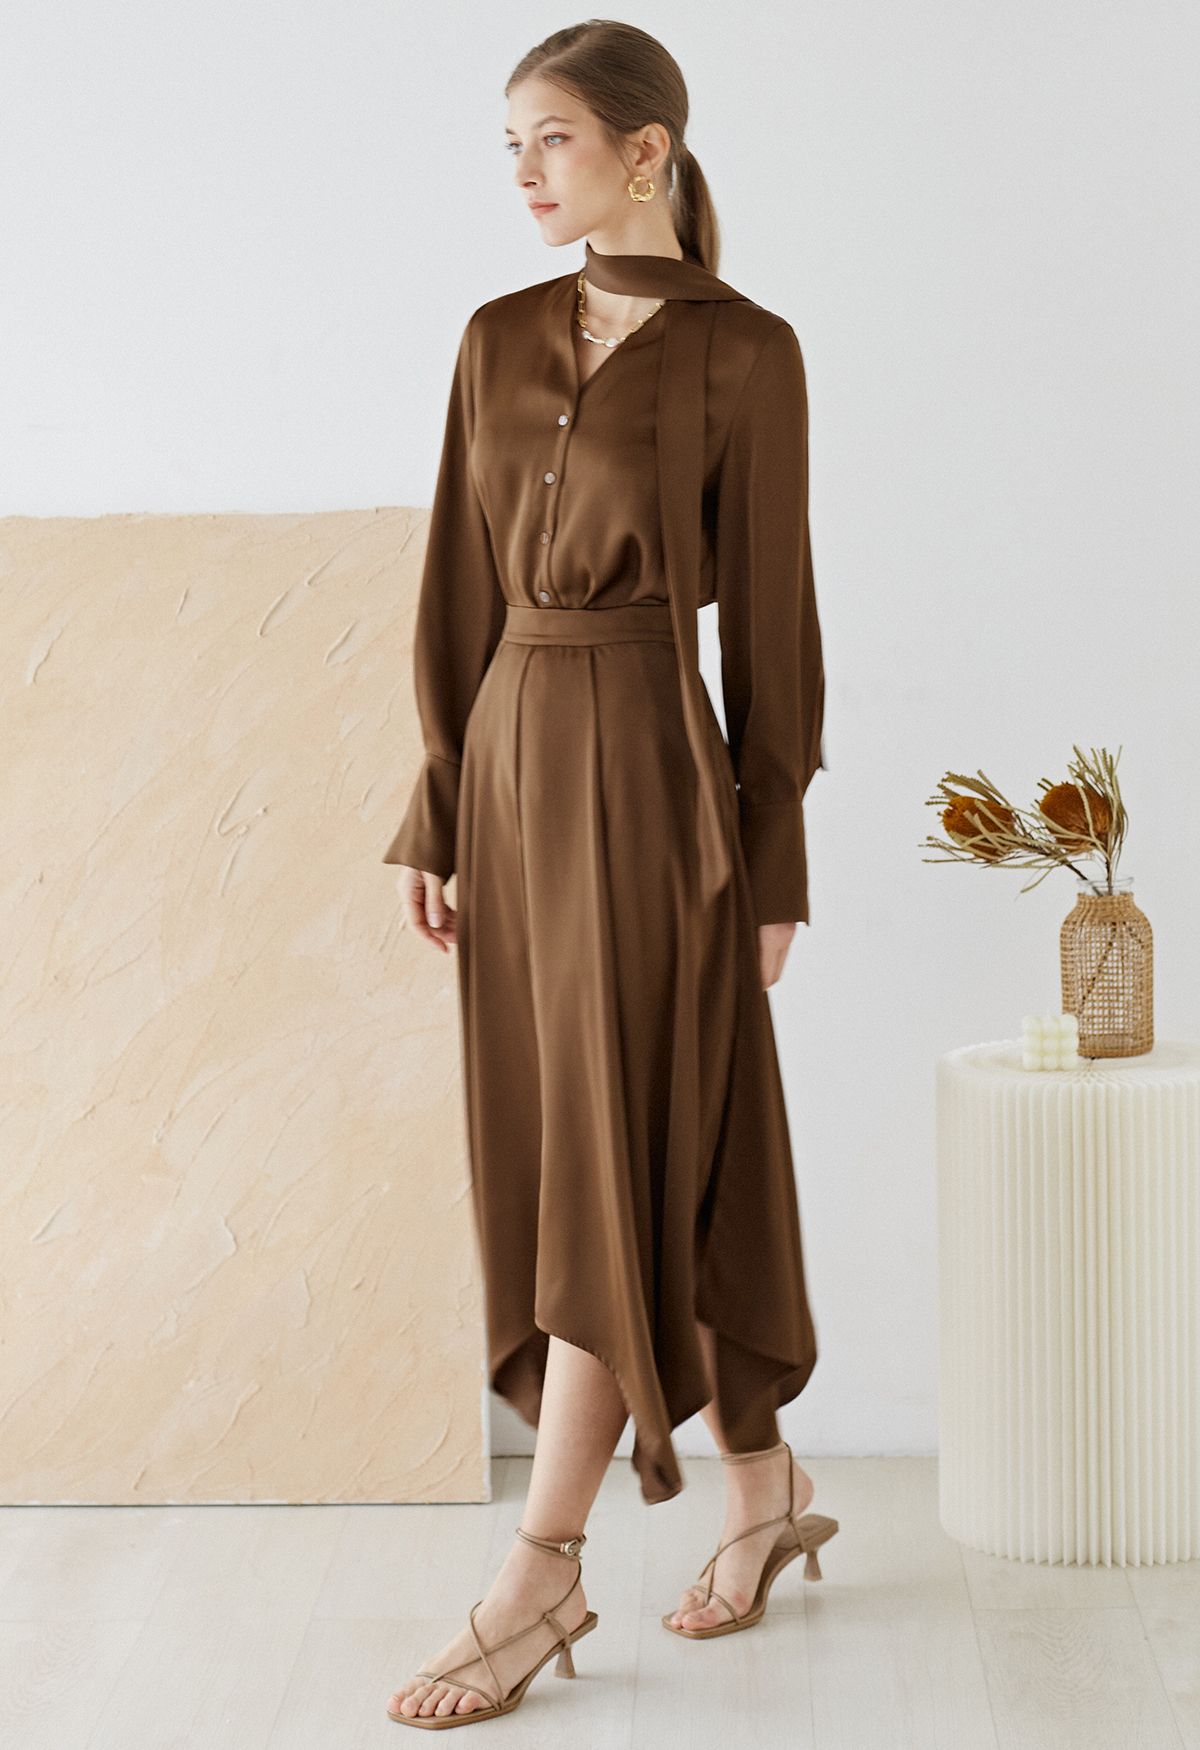 Asymmetric Hem Double Slit Satin Skirt in Brown